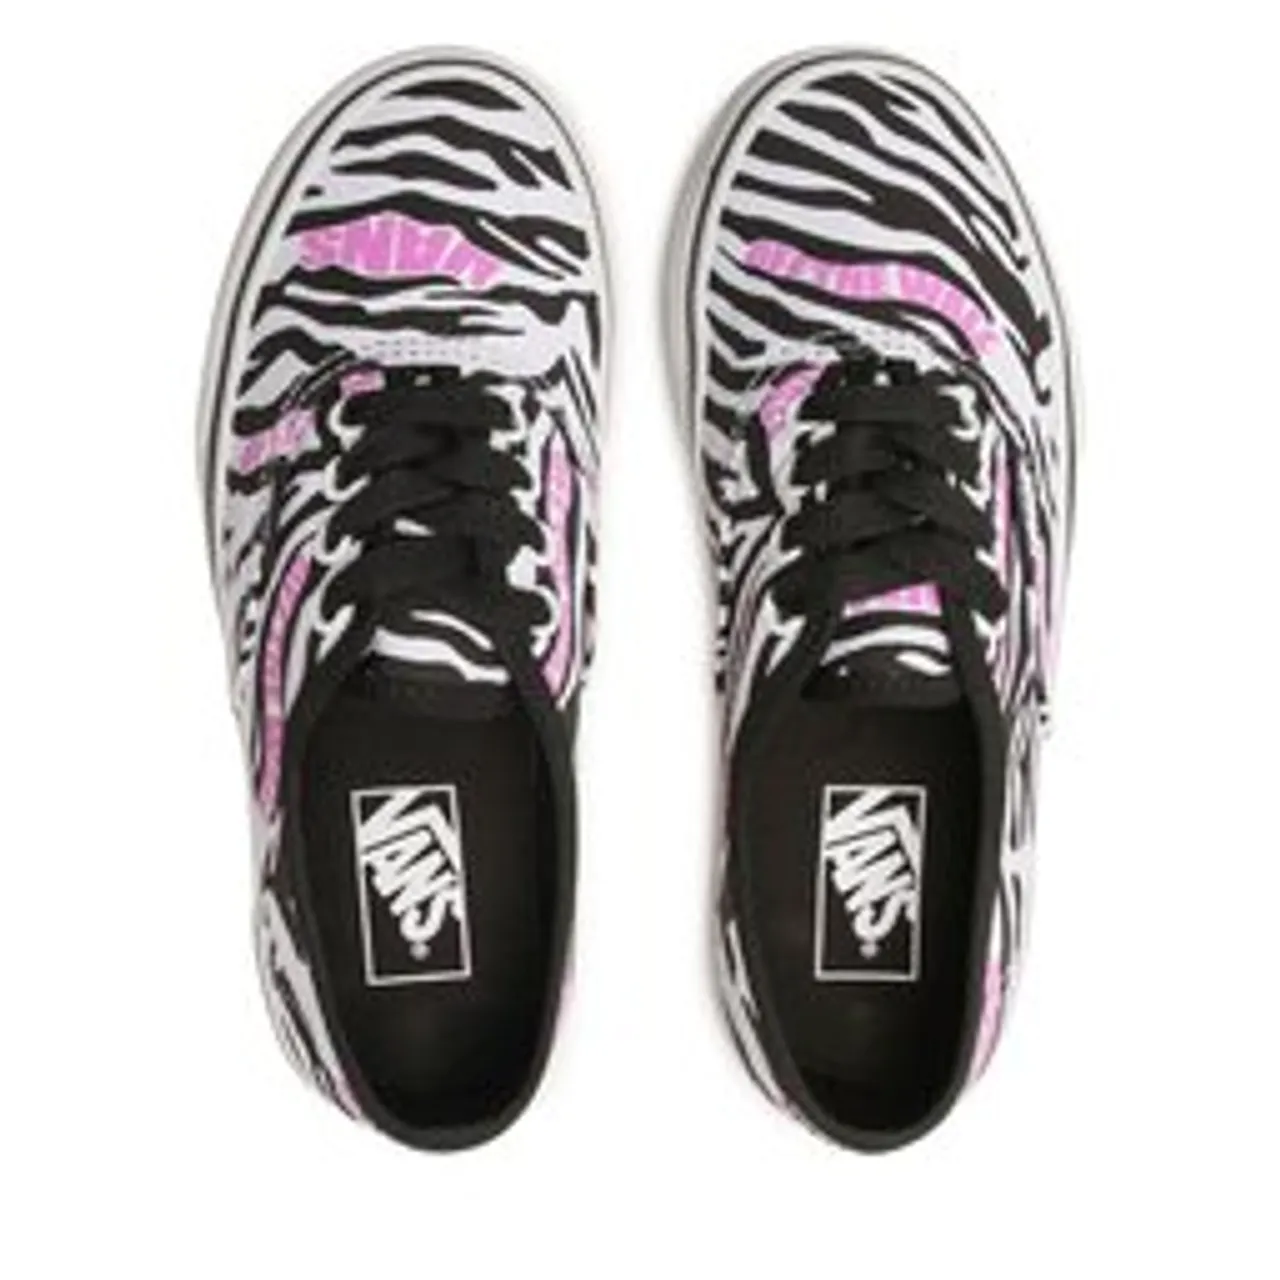 Sneakers aus Stoff Vans Authentic VN0A3UIVBMA1 Zebra Daze Black